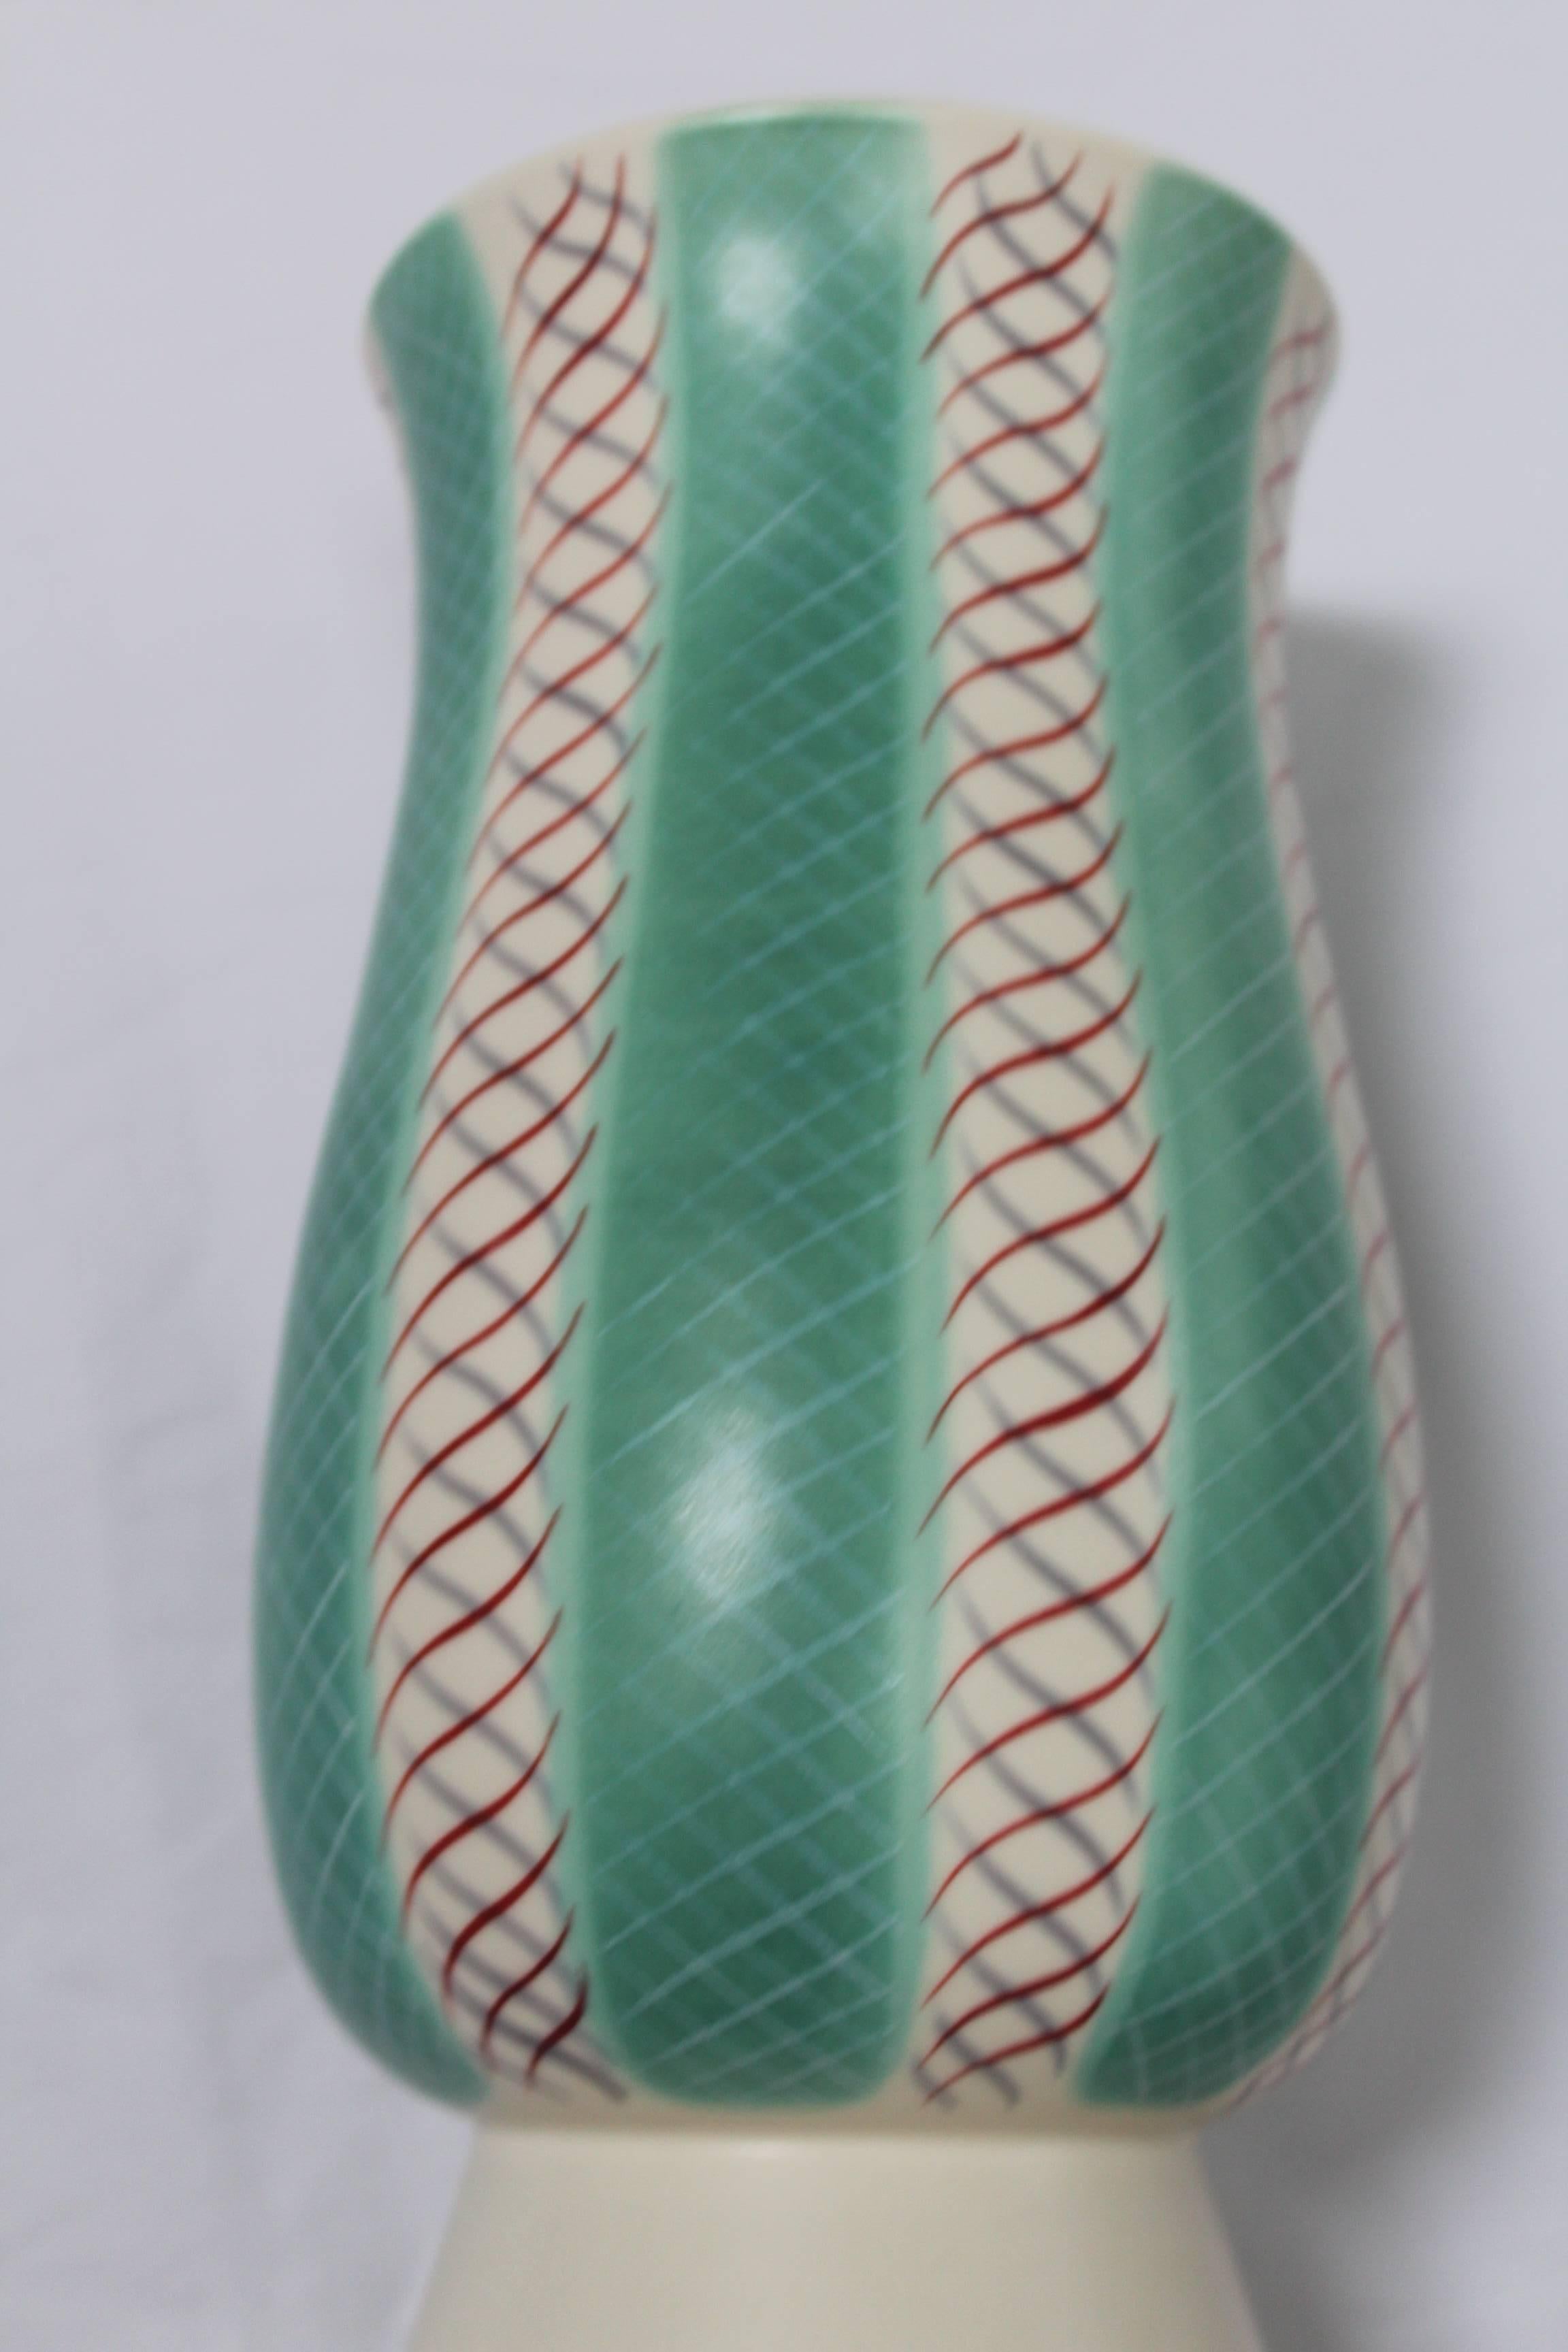 20th Century Mid-Century Modern Poole Pottery Vase